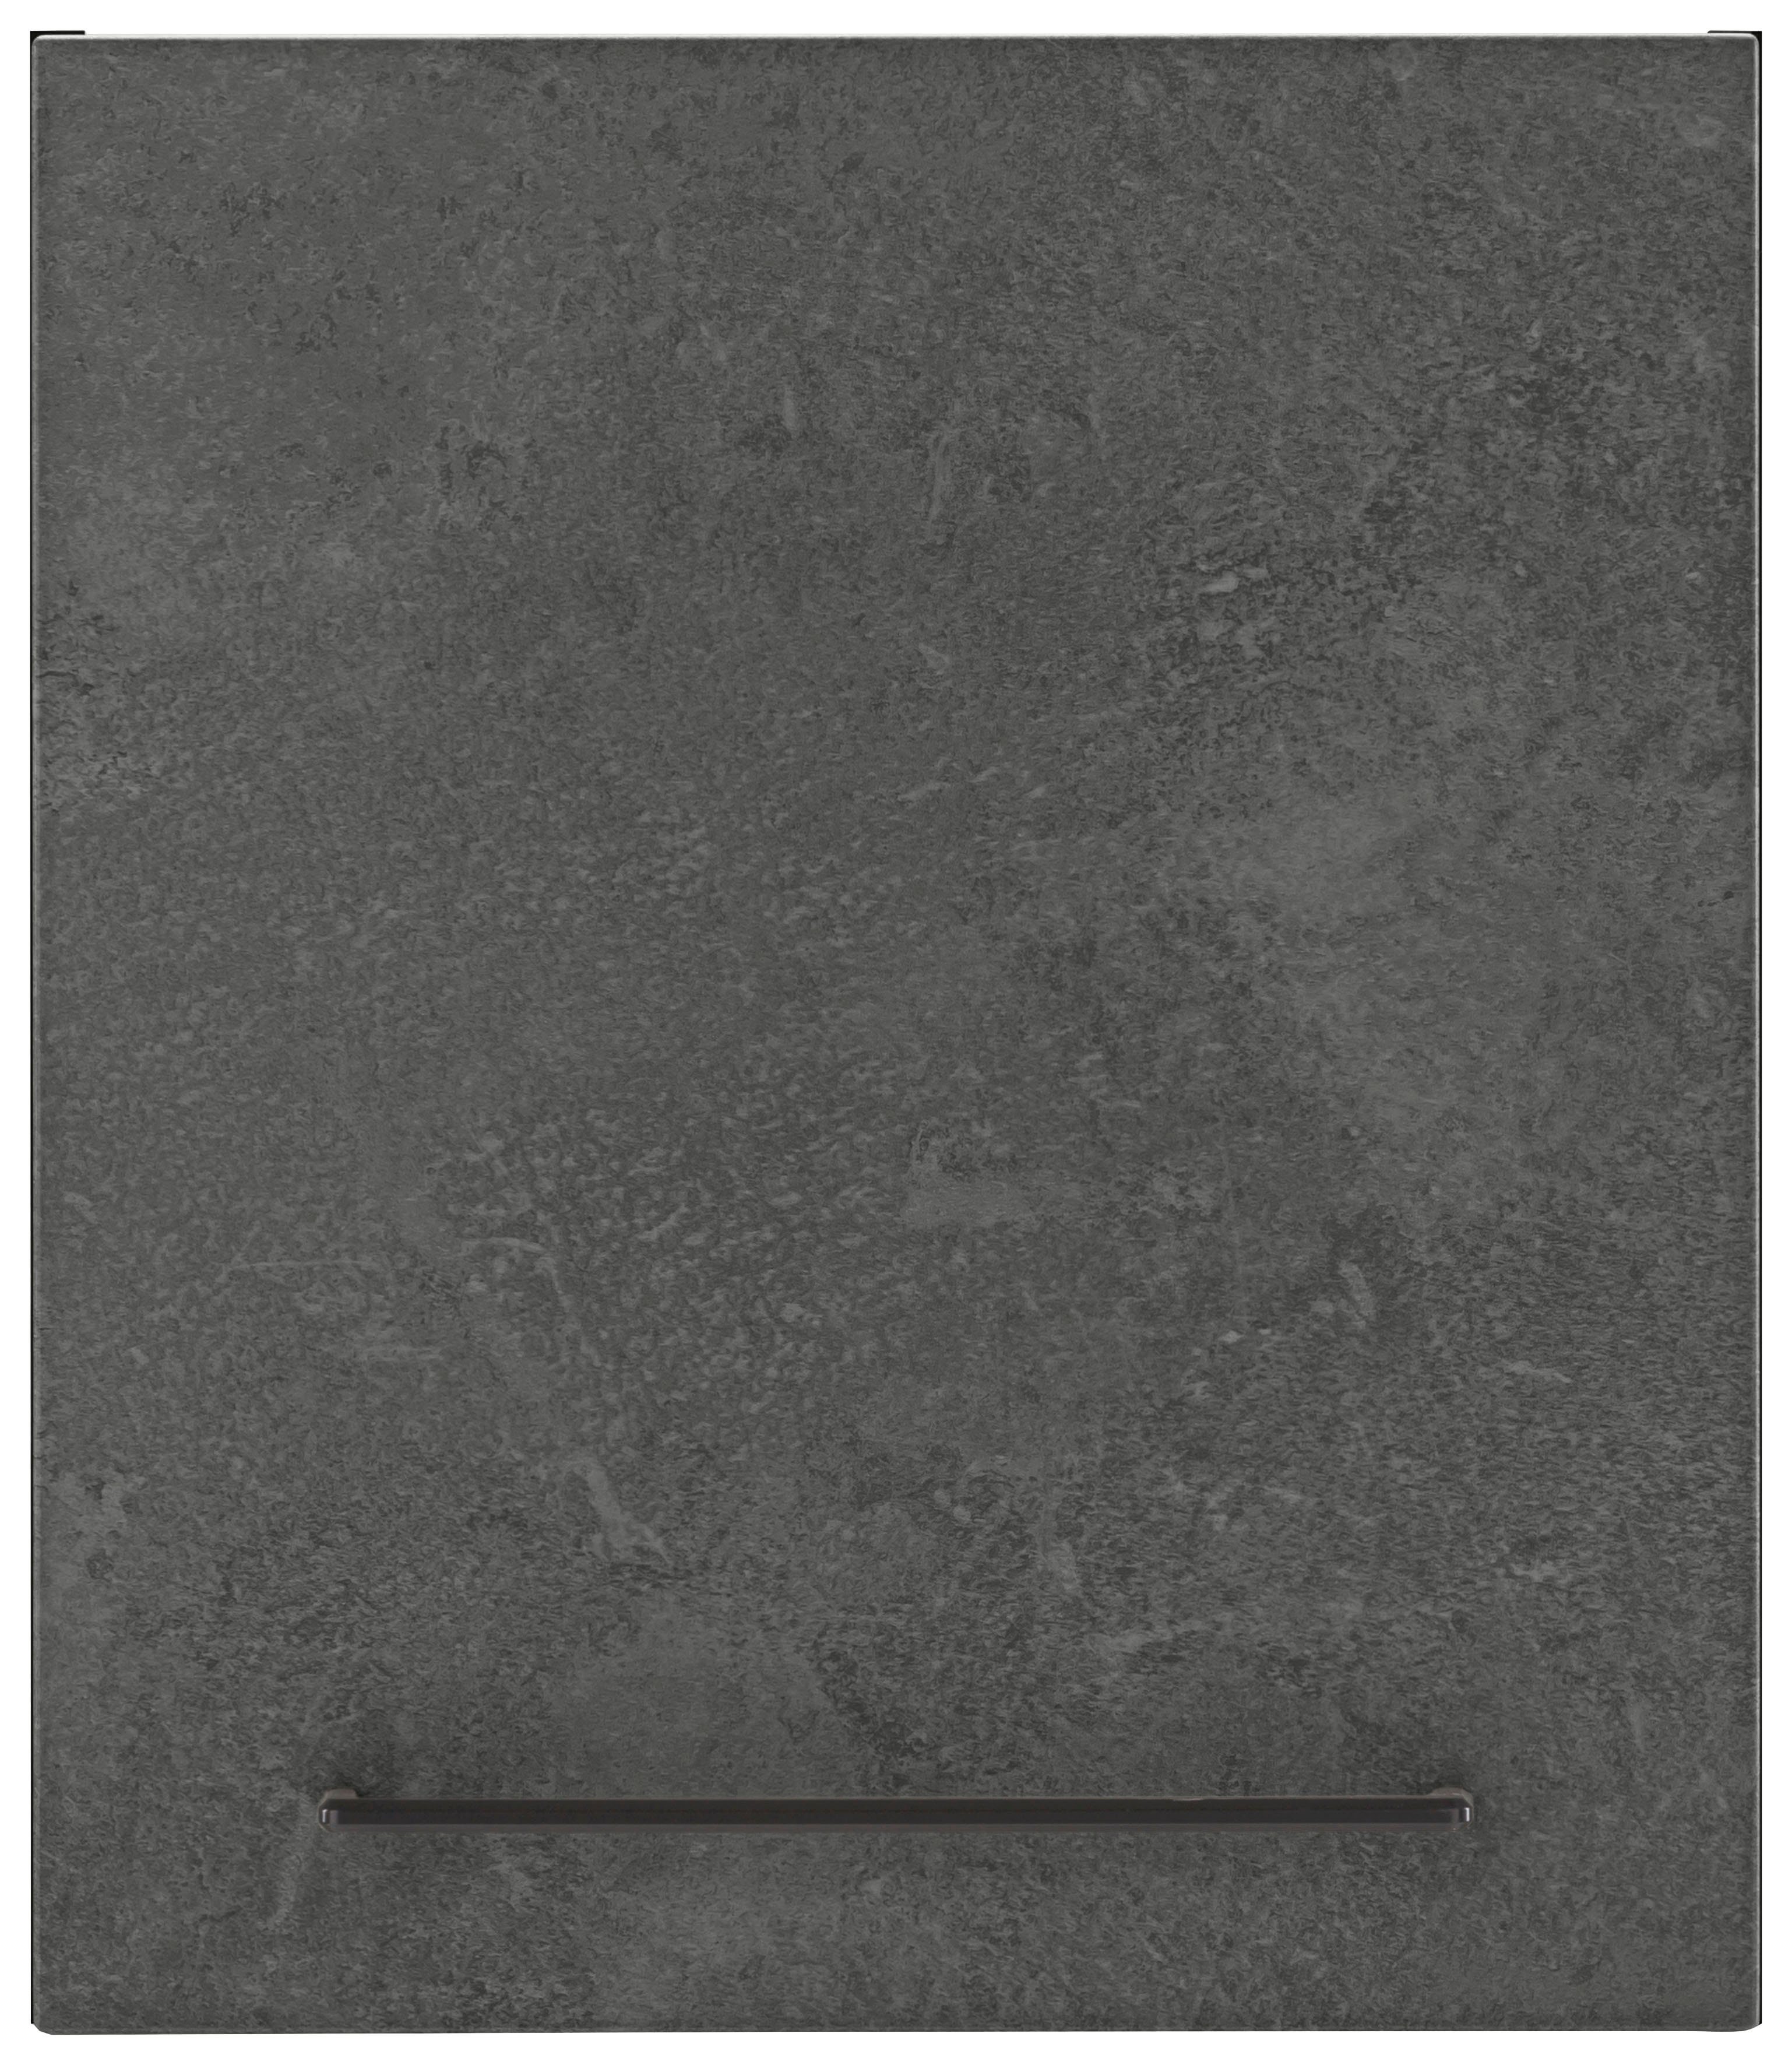 cm schwarzer 1 Front betonfarben dunkel 57 hoch, breit, HELD Tür, Tulsa Metallgriff, 50 Hängeschrank cm | grafit MÖBEL MDF